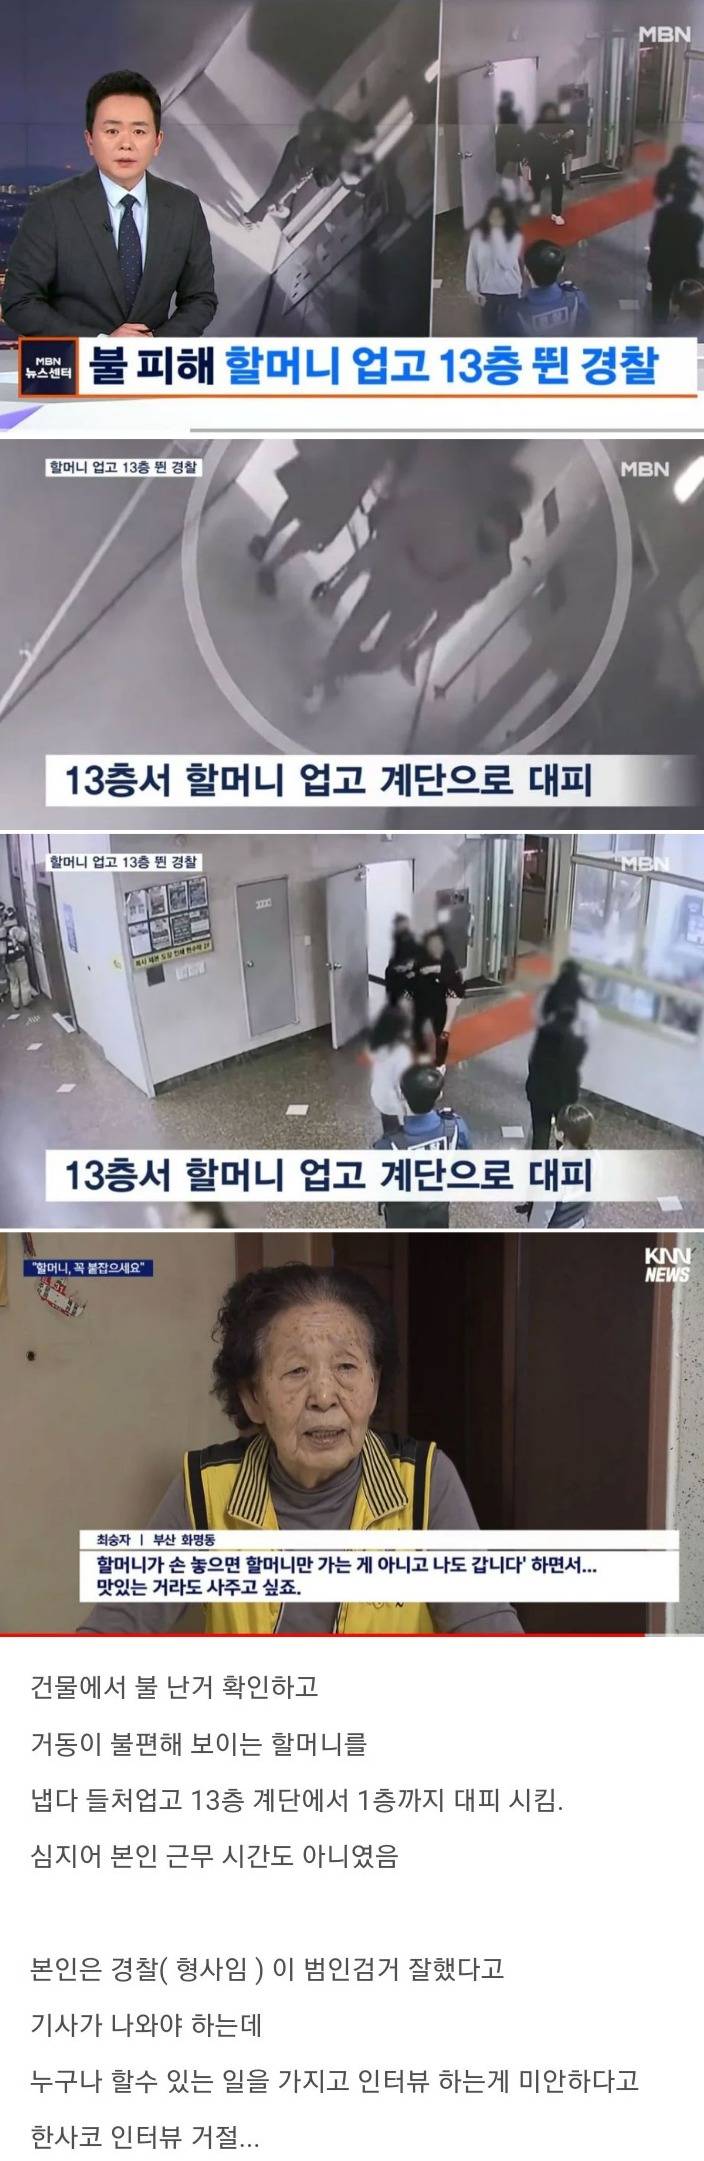 불난 건물에서 할머니 업고 13층을 뛴 경찰